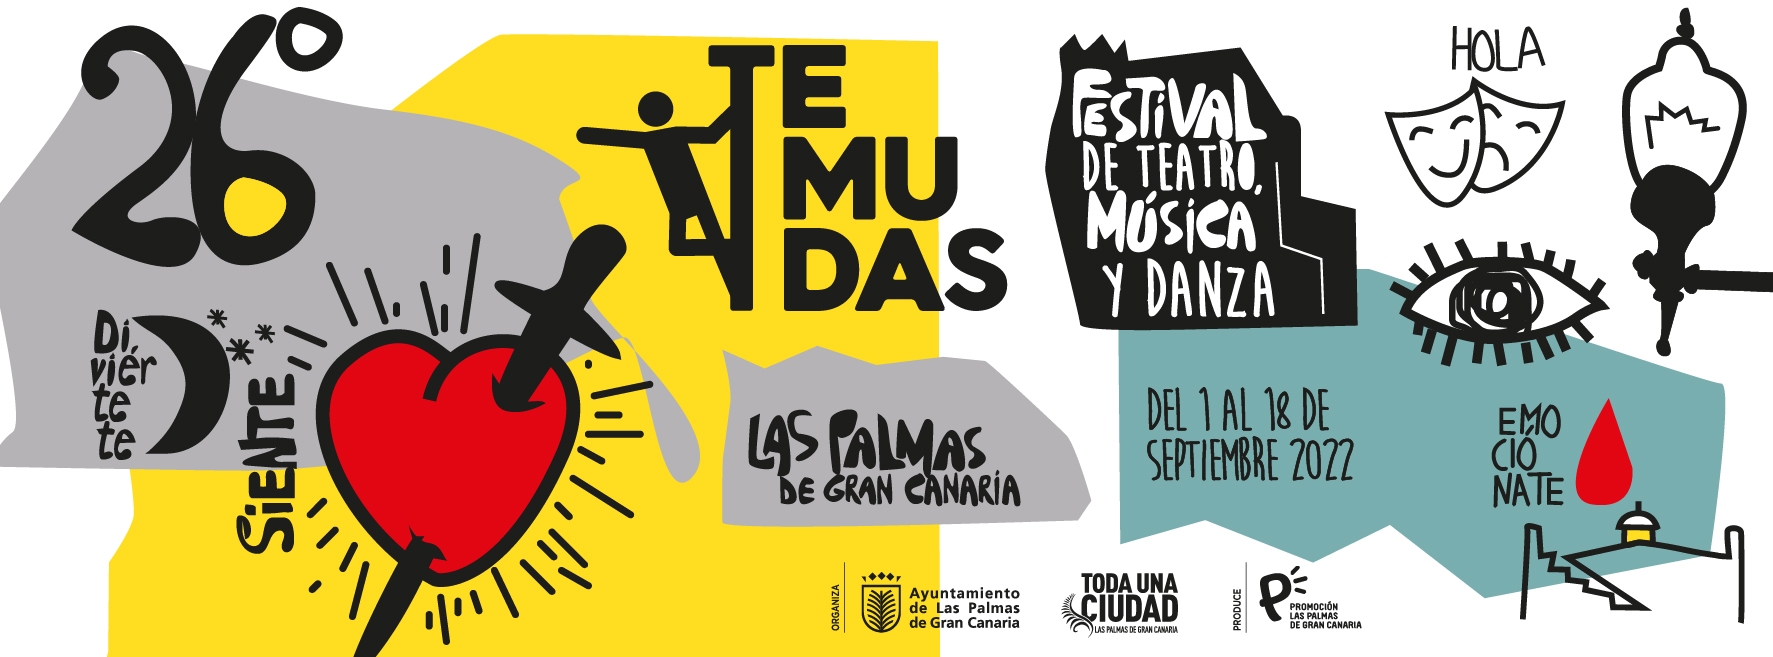 TEMUDAS Fest 2022